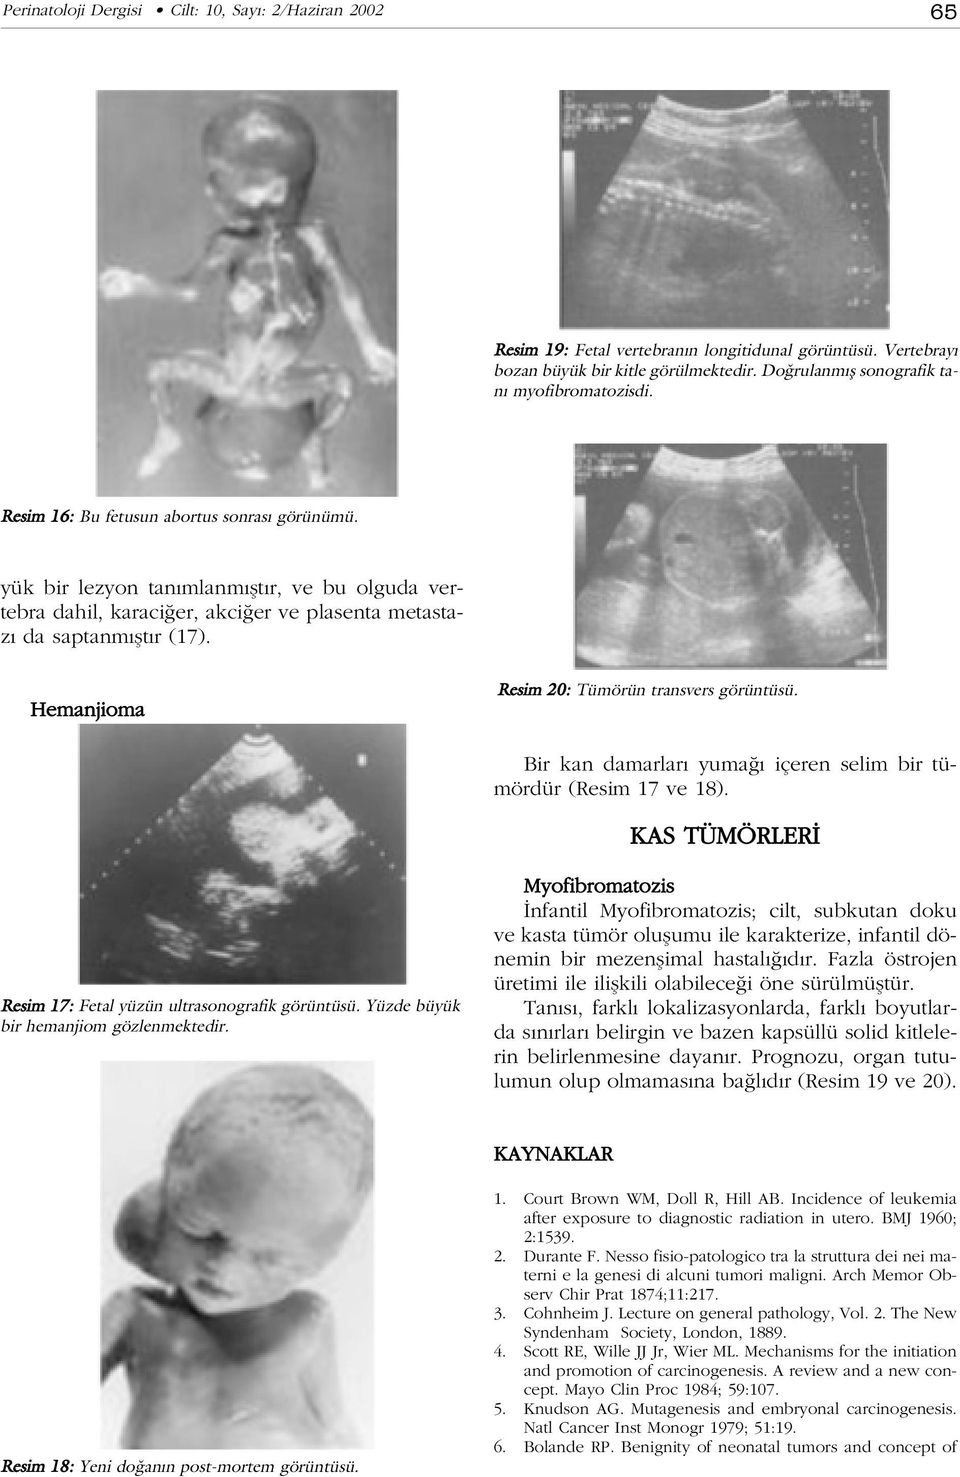 Hemanjioma Resim 20: Tümörün transvers görüntüsü. Bir kan damarlar yuma içeren selim bir tümördür (Resim 17 ve 18). KAS TÜMÖRLER Resim 17: Fetal yüzün ultrasonografik görüntüsü.